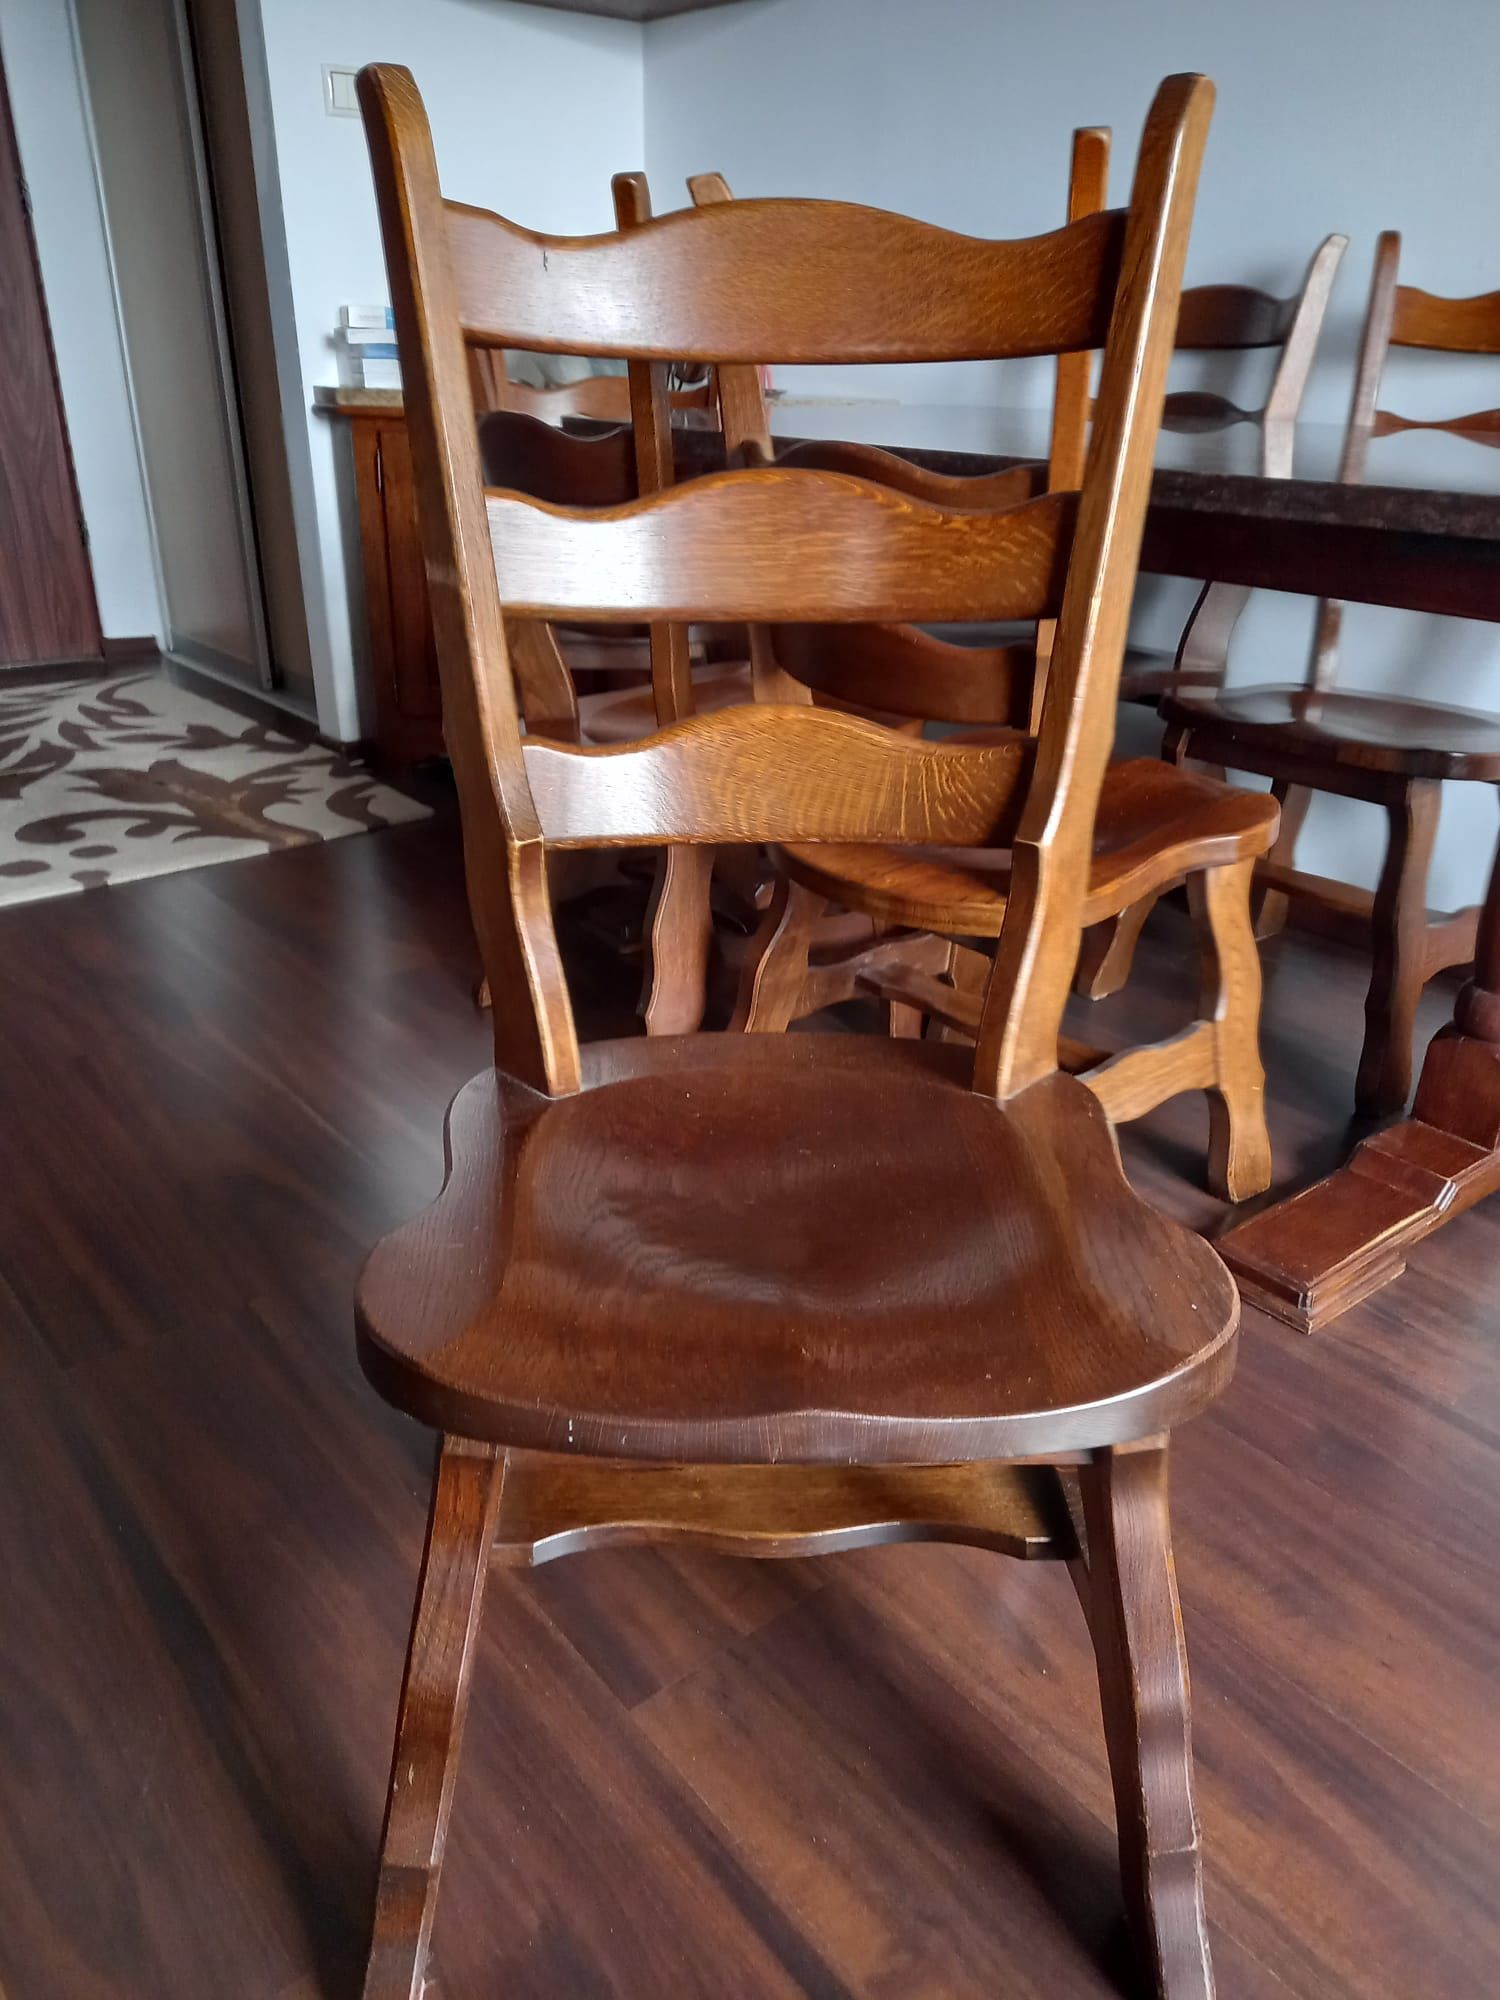 Stół dębowy z granitowym blatem 6 krzesł/solidny lite drewno/dom taras